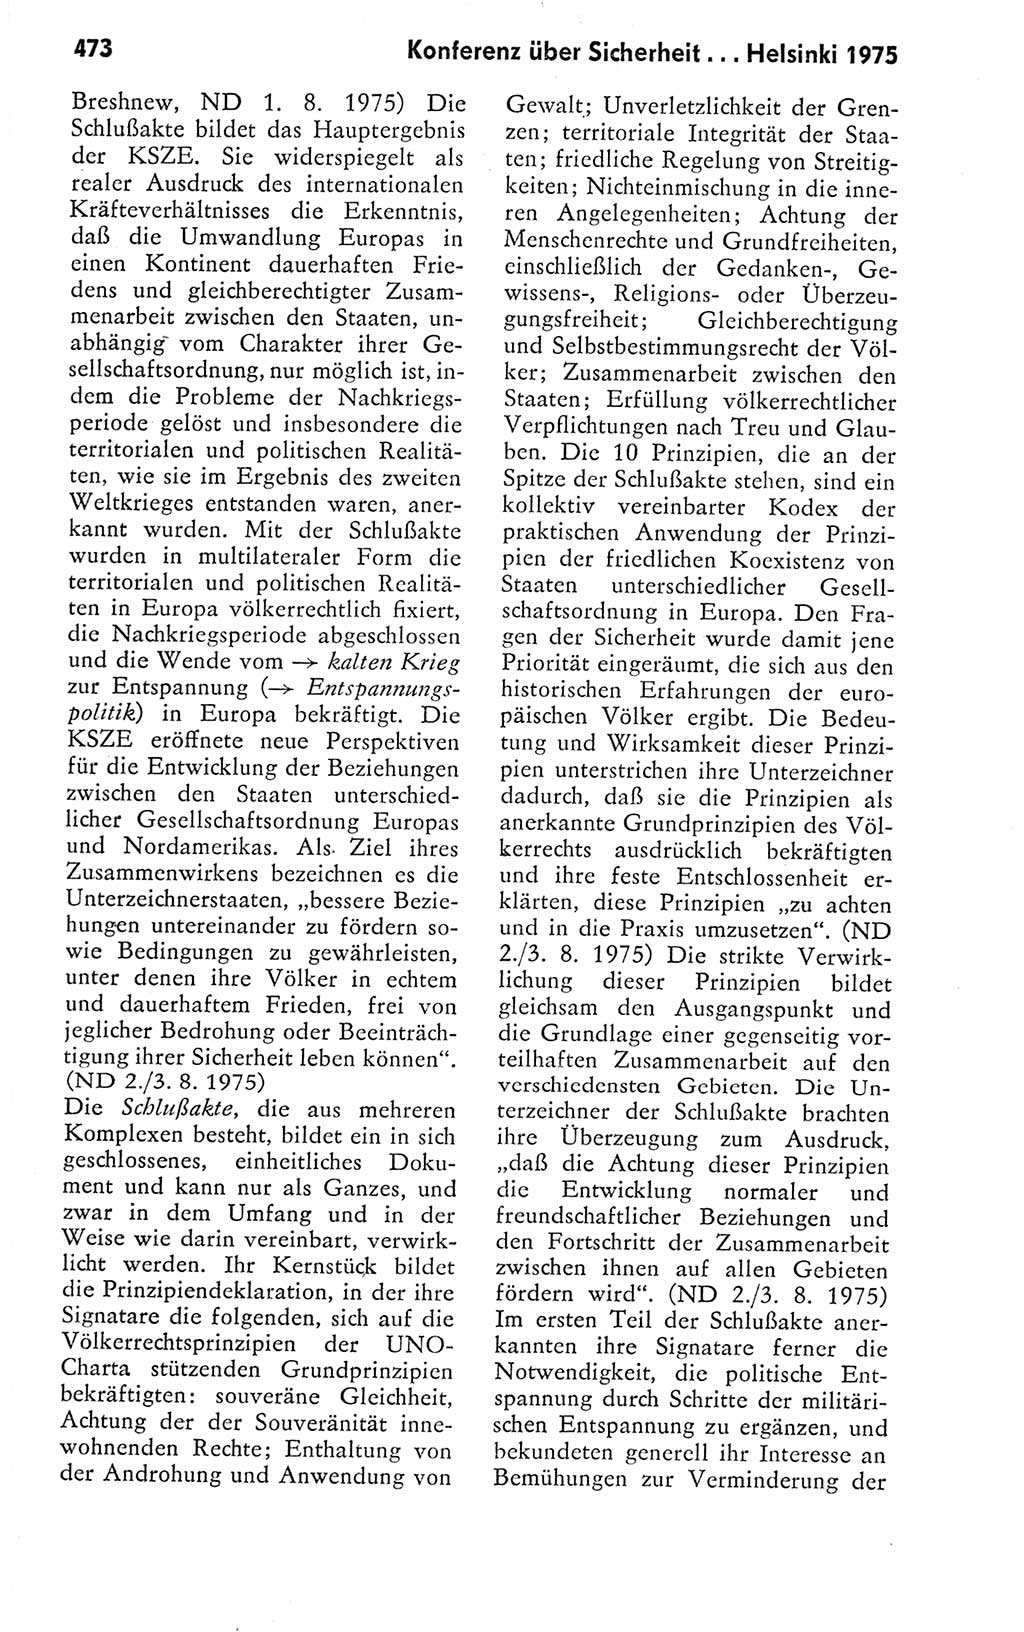 Kleines politisches Wörterbuch [Deutsche Demokratische Republik (DDR)] 1978, Seite 473 (Kl. pol. Wb. DDR 1978, S. 473)